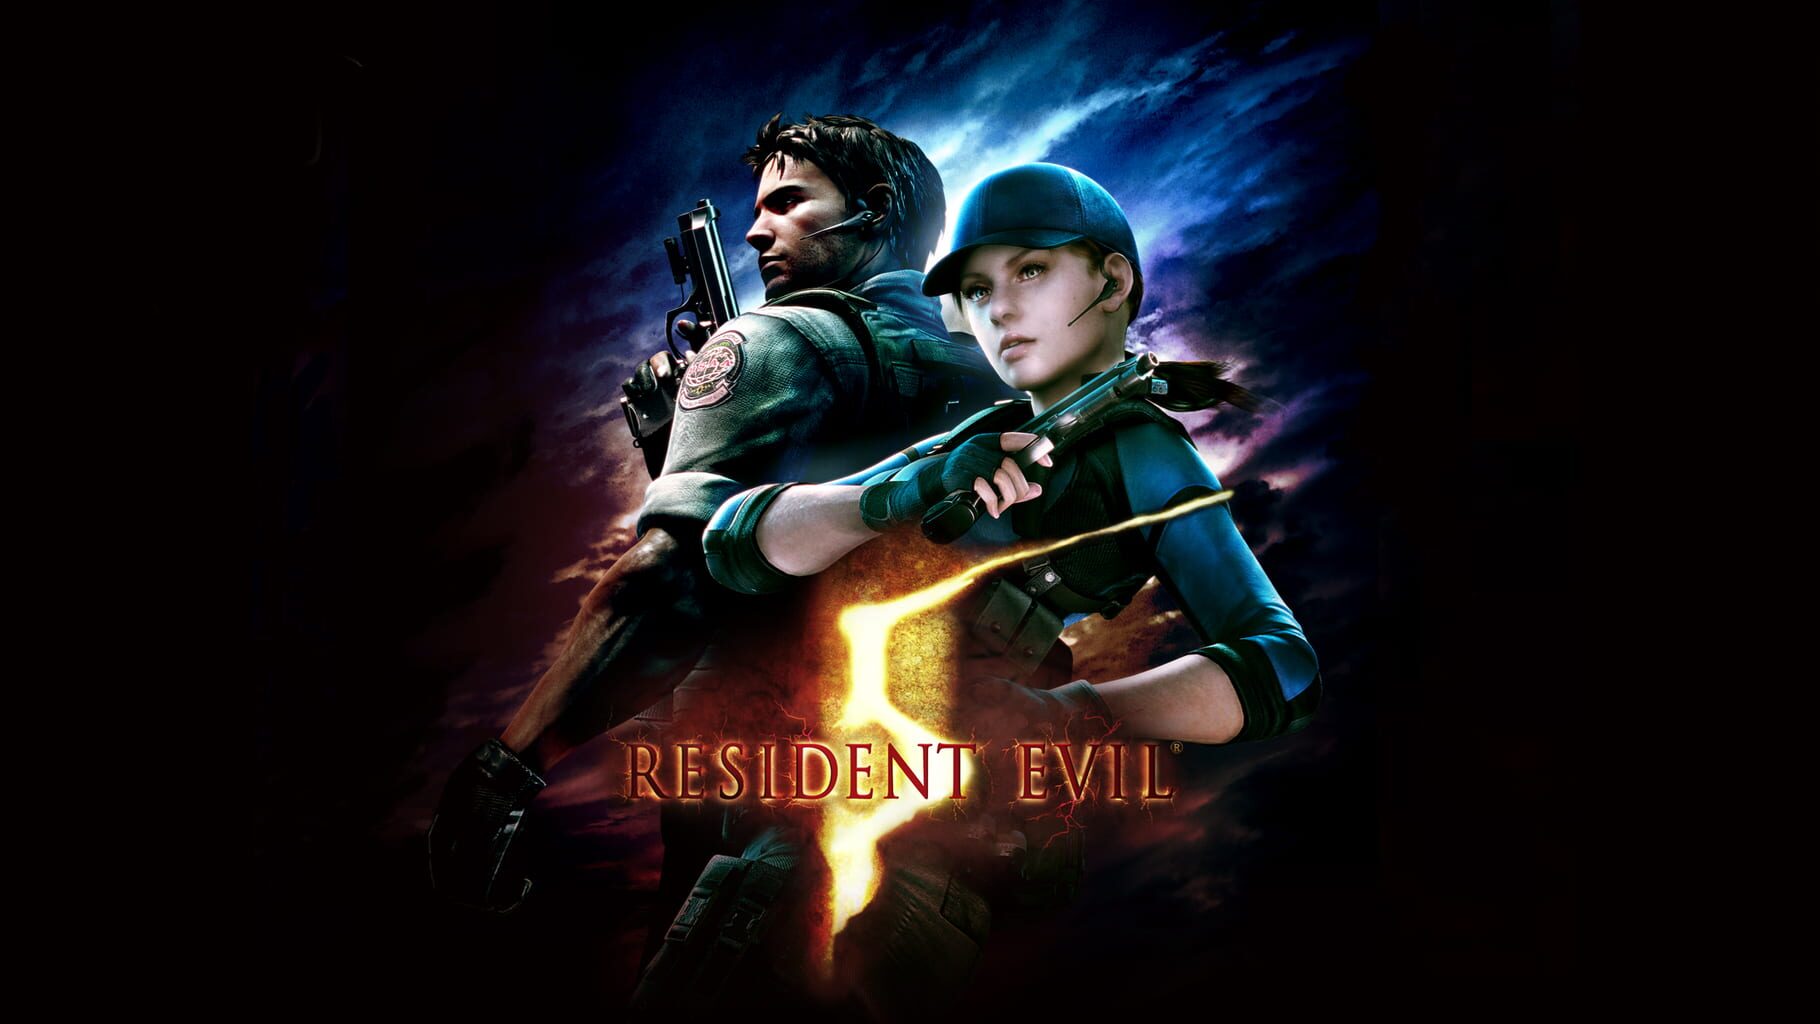 Arte - Resident Evil 5